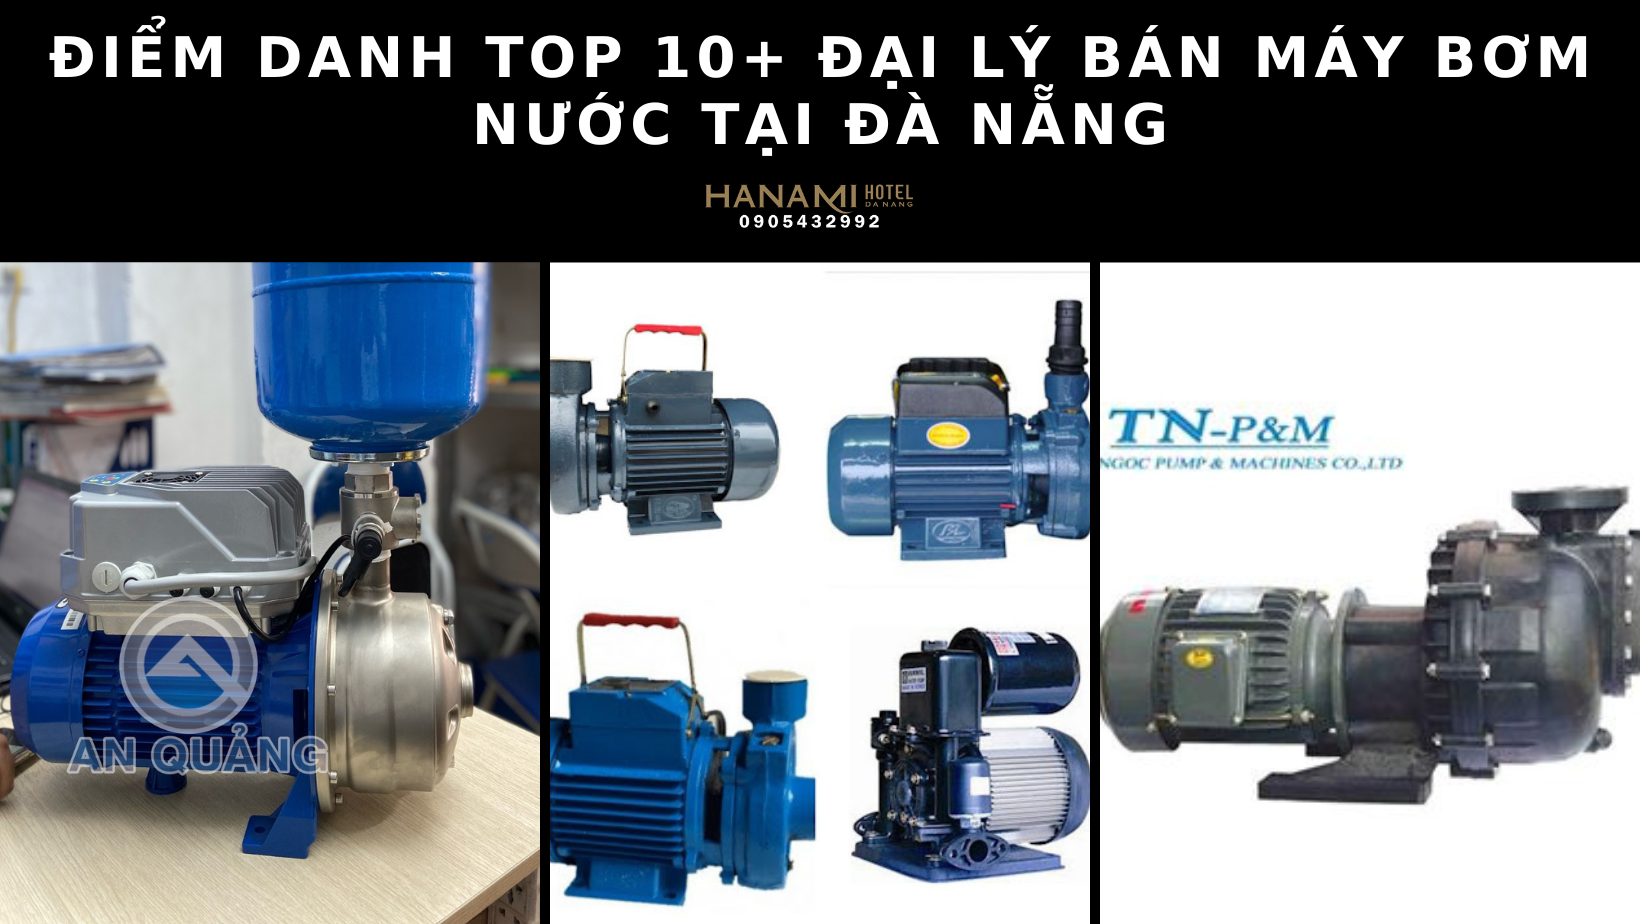 Điểm danh top 10+ đại lý bán máy bơm nước tại Đà Nẵng